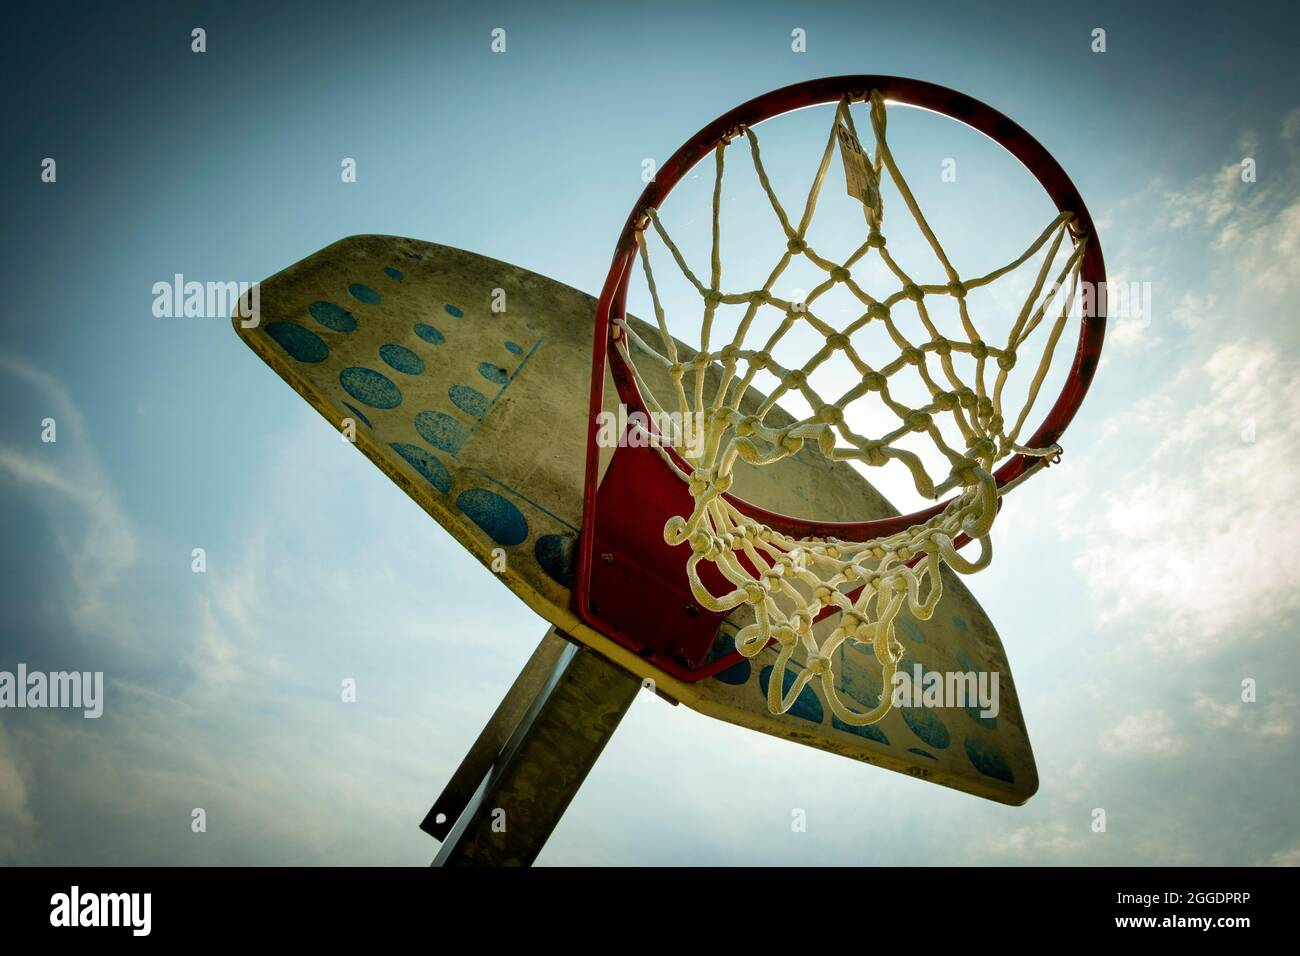 Old basketball hoop Stock Photo